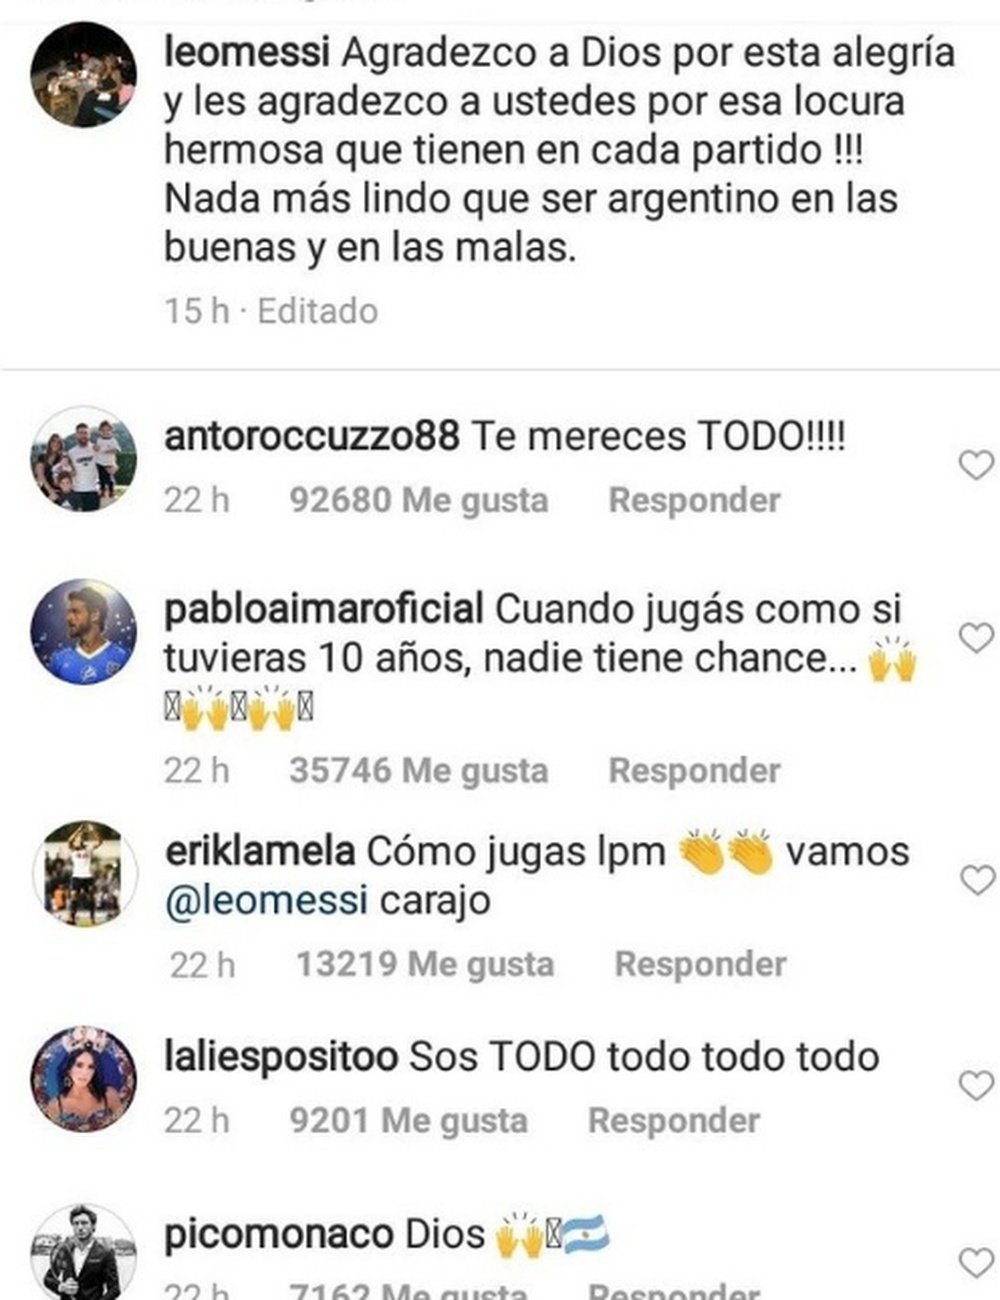 El mensaje de Pablo Aimar a Messi en redes sociales. Instagram/leomessi